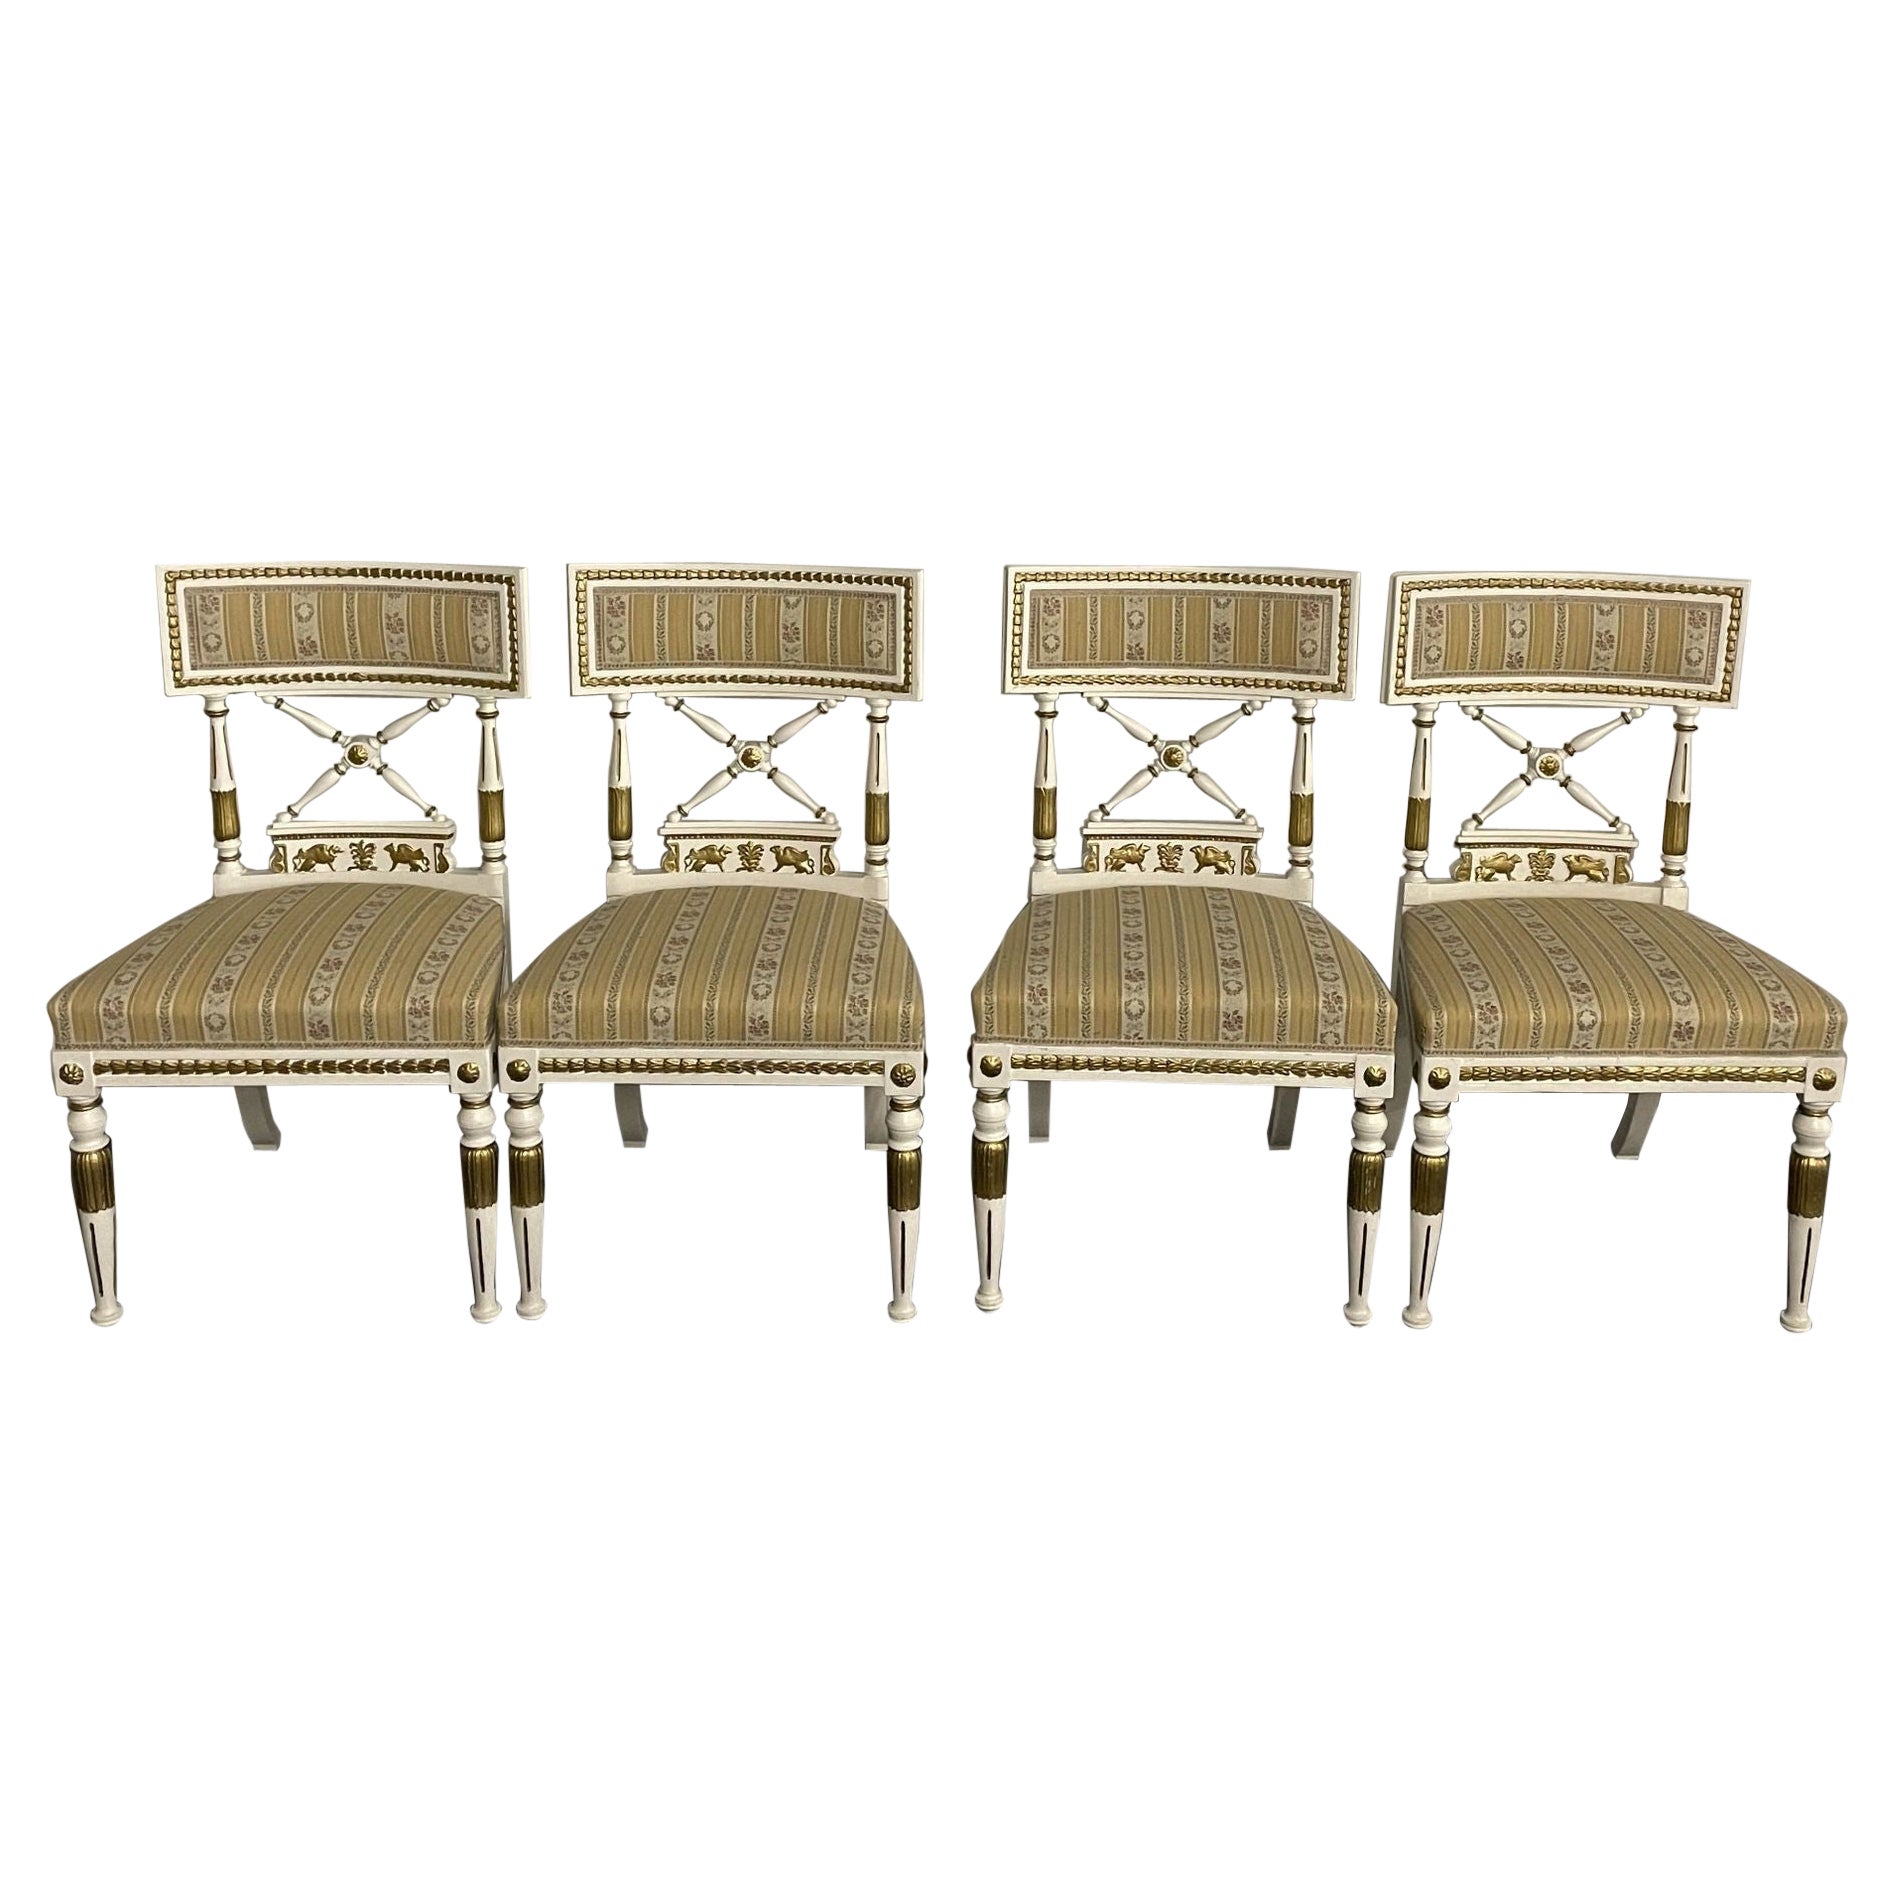 Satz von 4 neoklassizistischen Stühlen im Gustavianischen Stil, teilweise vergoldet und bemalt, Sphinx Ca